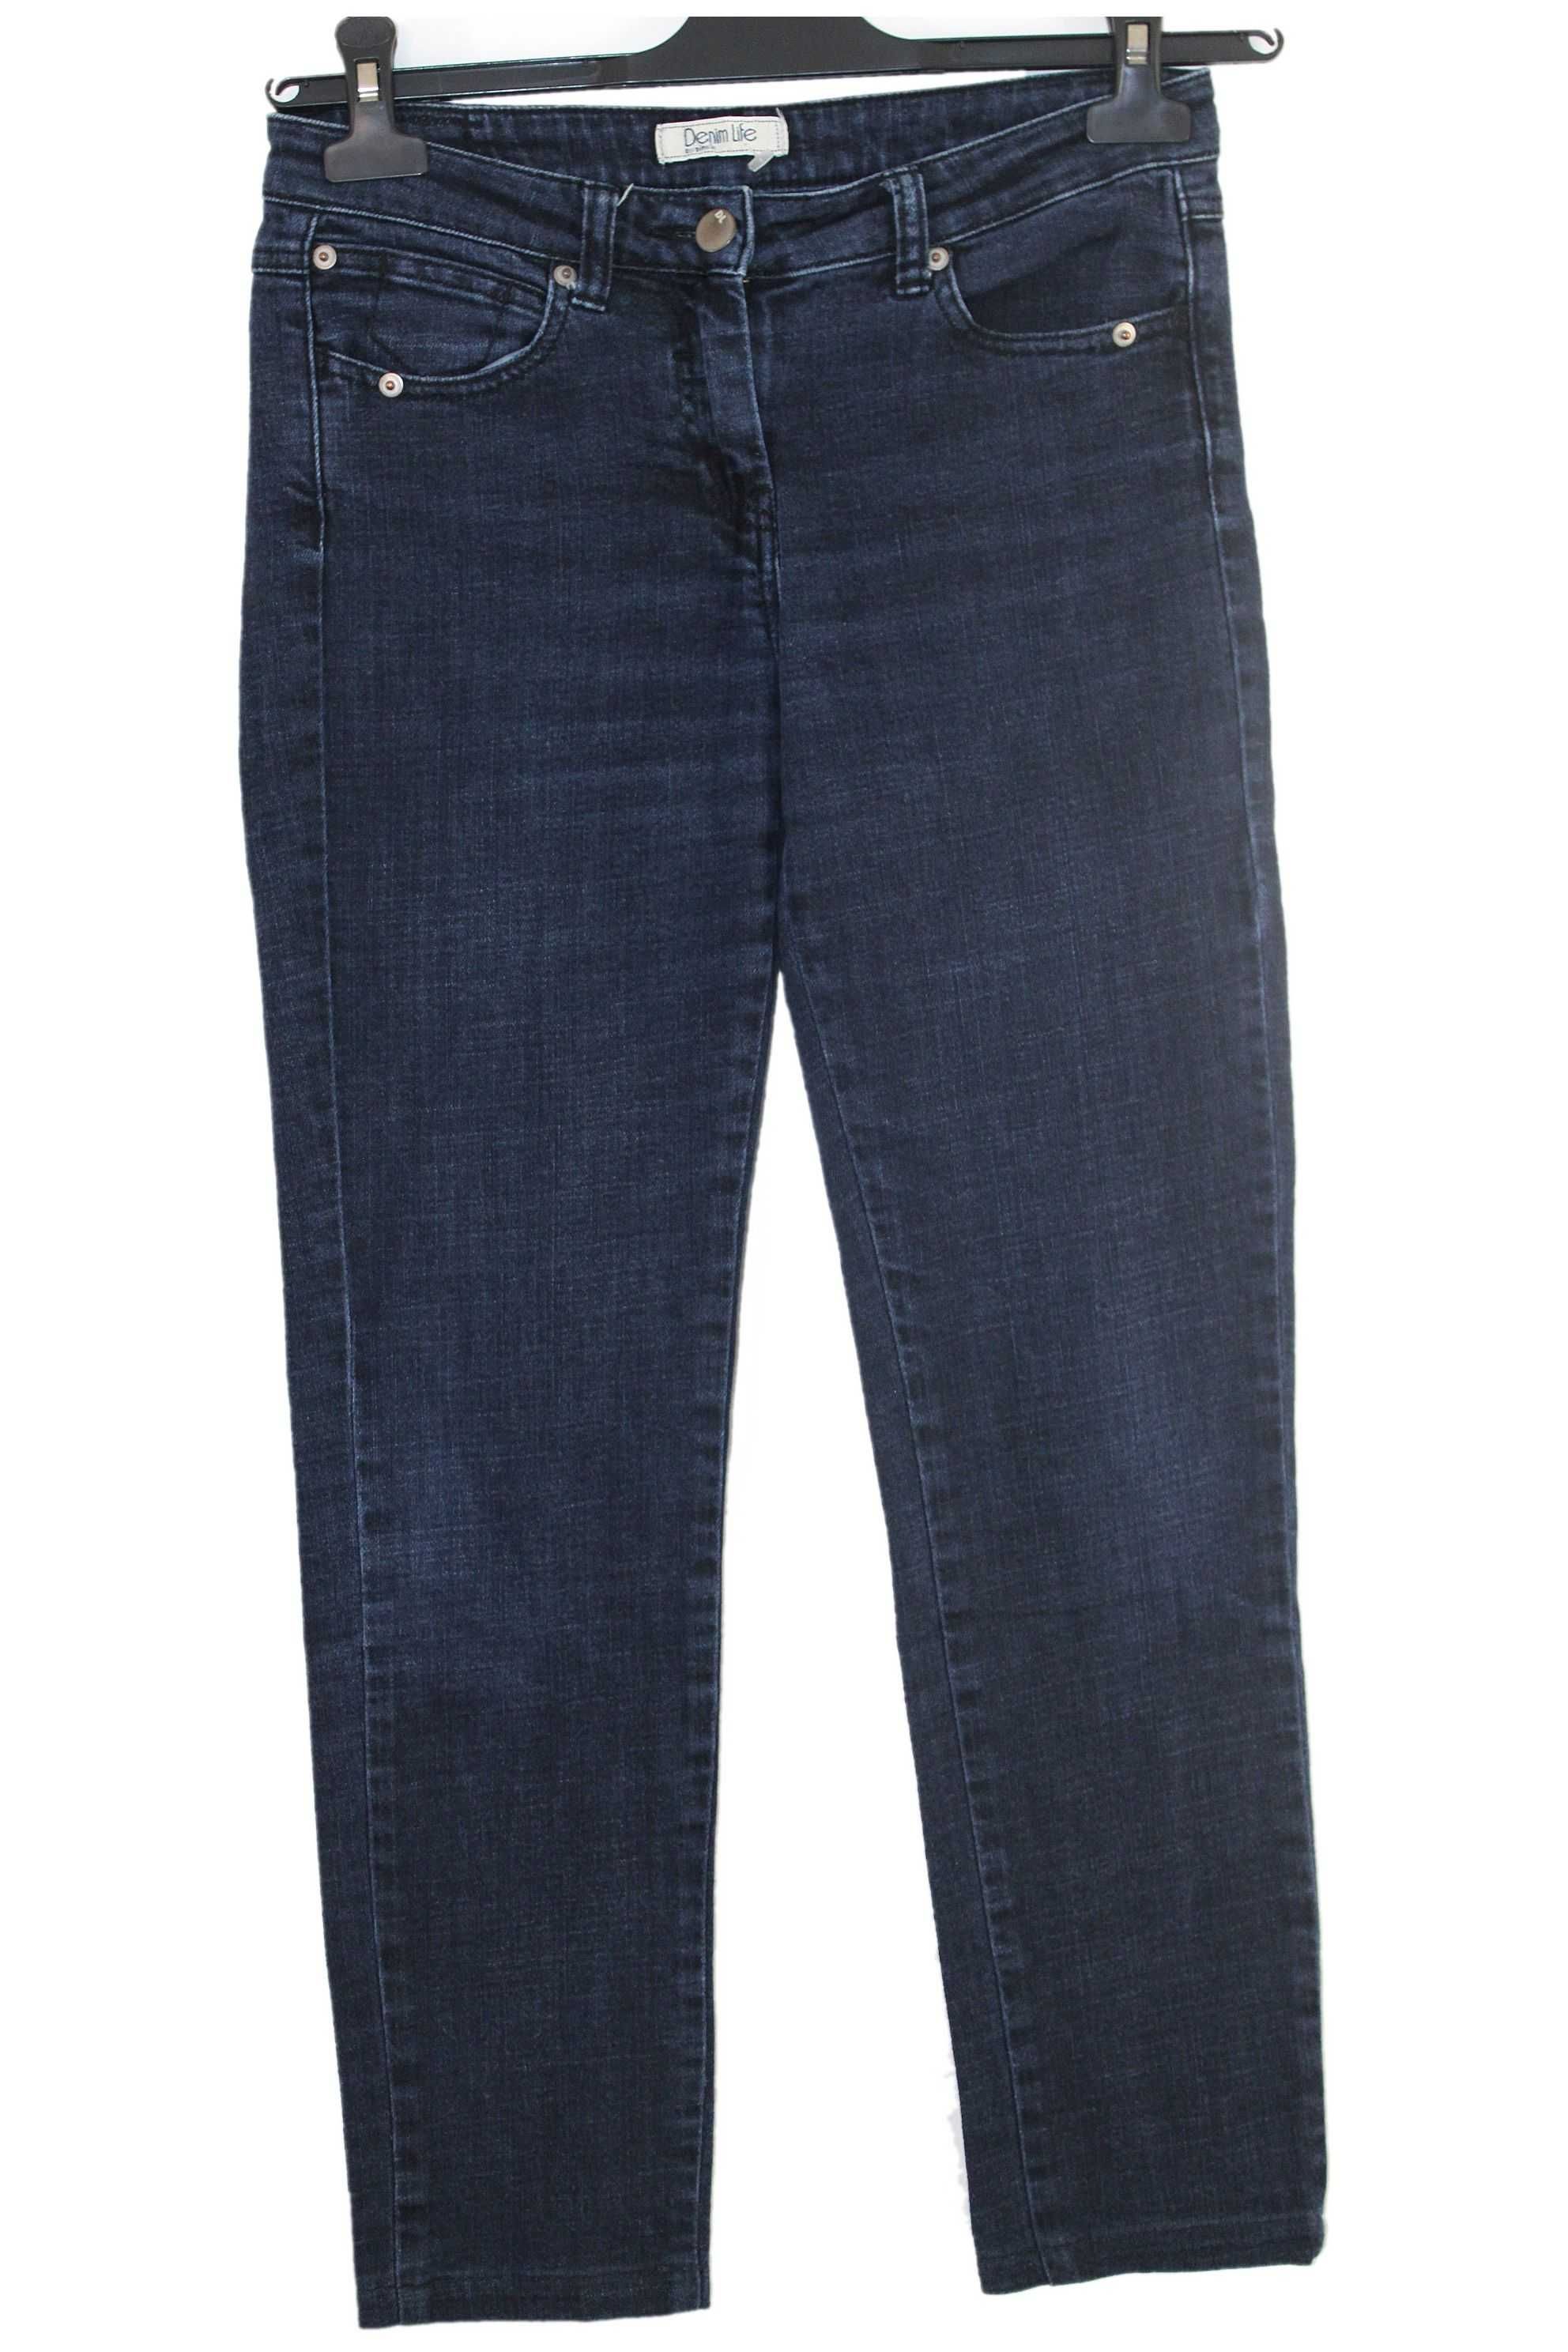 x4 PIMKIE Stylowe Granatowe Damskie Spodnie Jeans Skinny XS/S 34/36